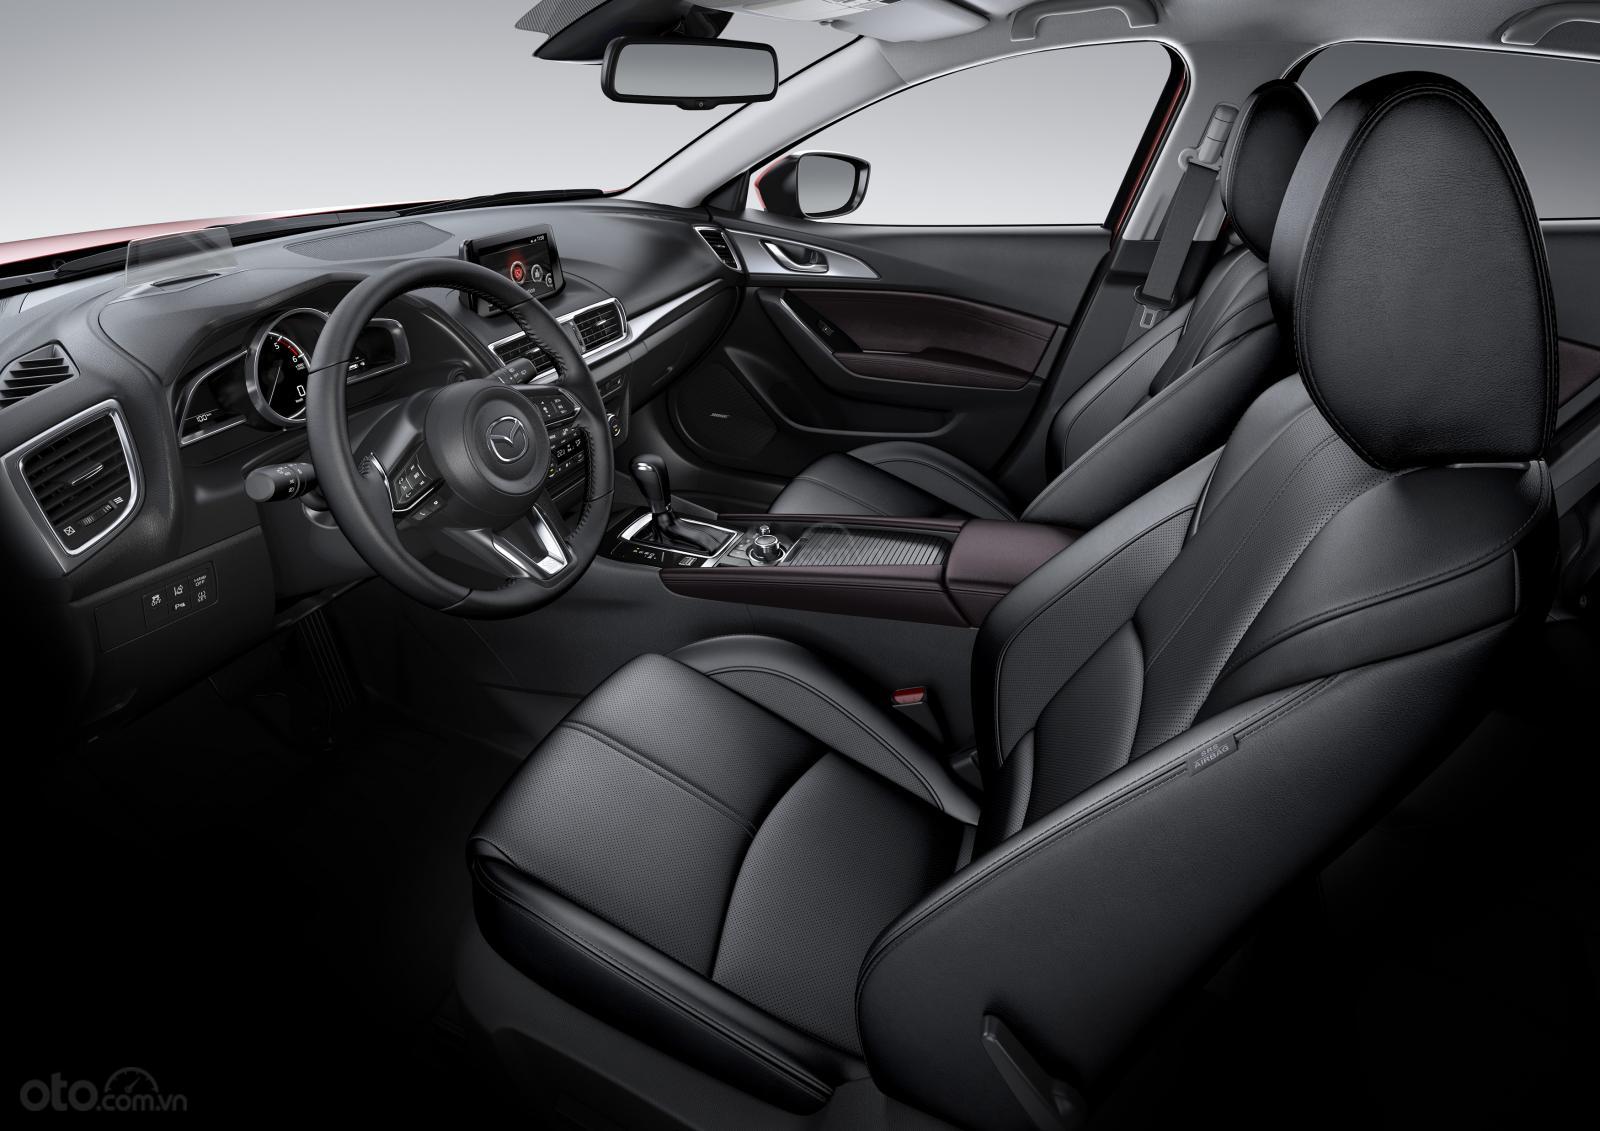 Nội thất của Mazda 3 được đánh giá là hiện đại và hấp dẫn nhất phân khúc xe hạng C.